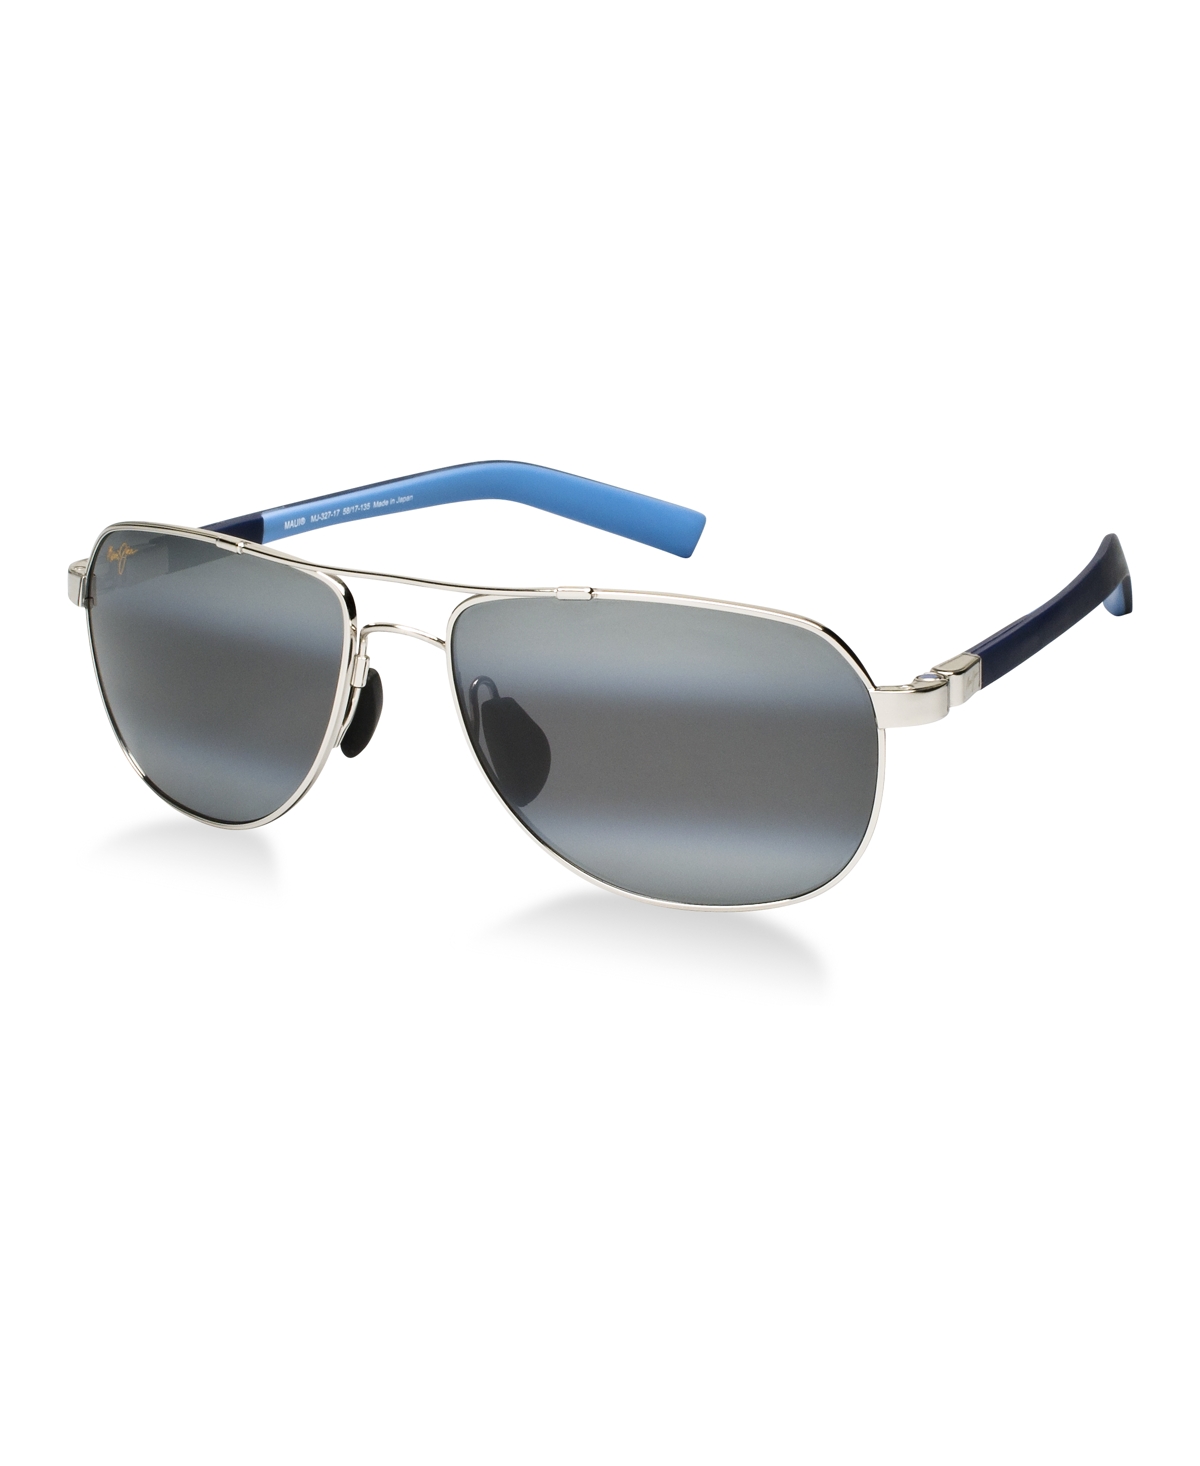 Guardrails Polarized Sunglasses , 327 - Multicolored/Grey